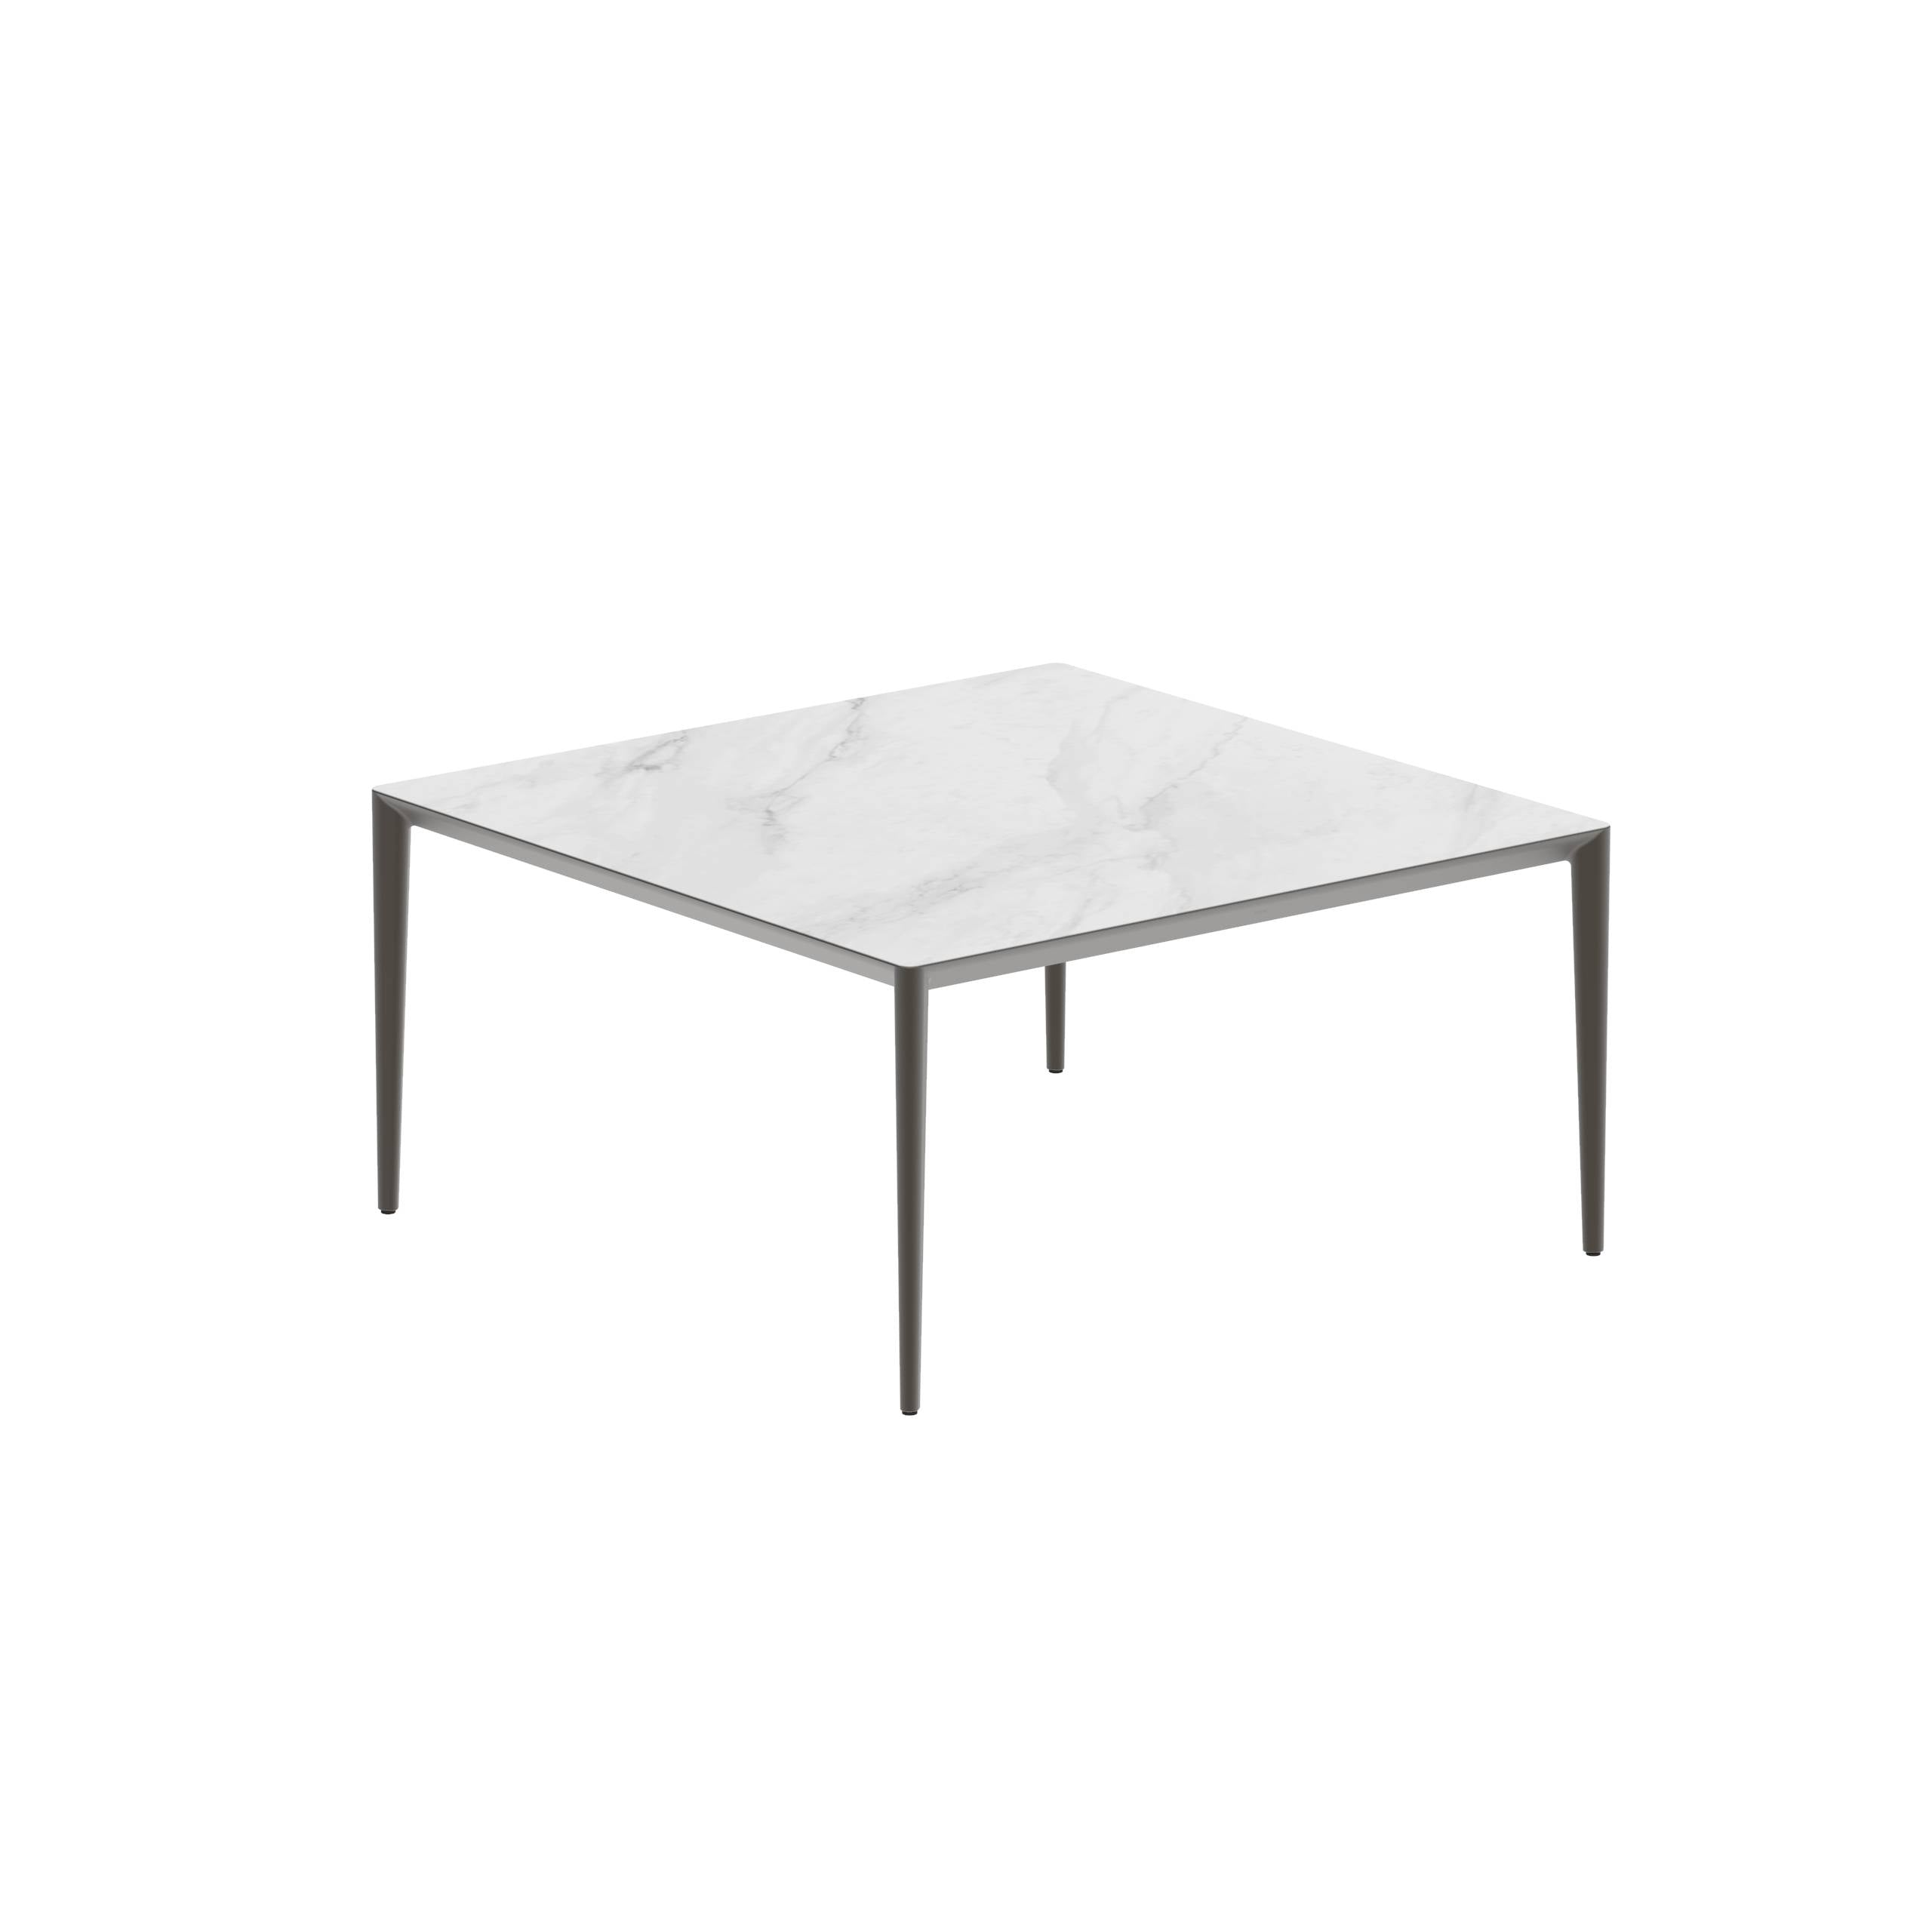 U-Nite Table 150x150cm Bronze With Ceramic Tabletop In Bianco Statuario